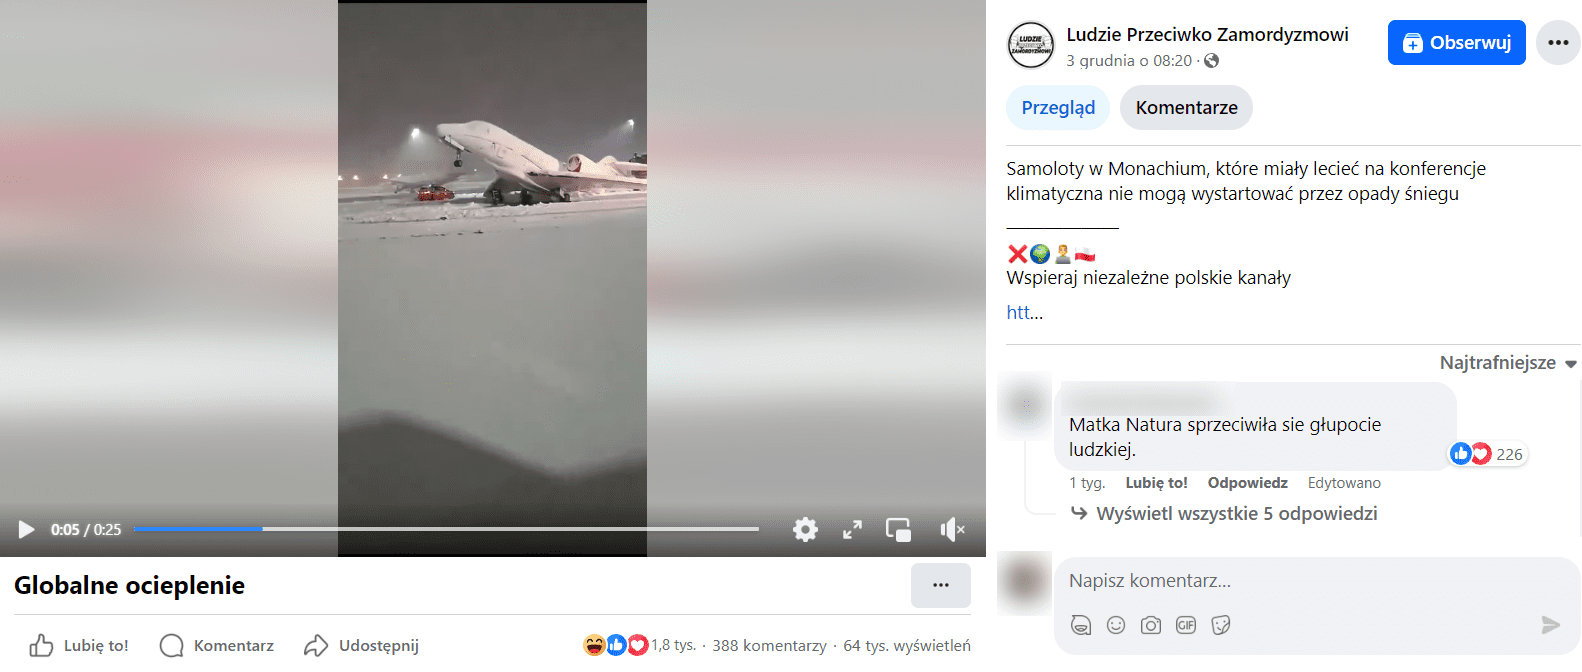 Zrzut ekranu posta na Facebooku, wraz z nagraniem, przedstawiającym zaśnieżone lotnisko w Monachium oraz przewrócony samolot.